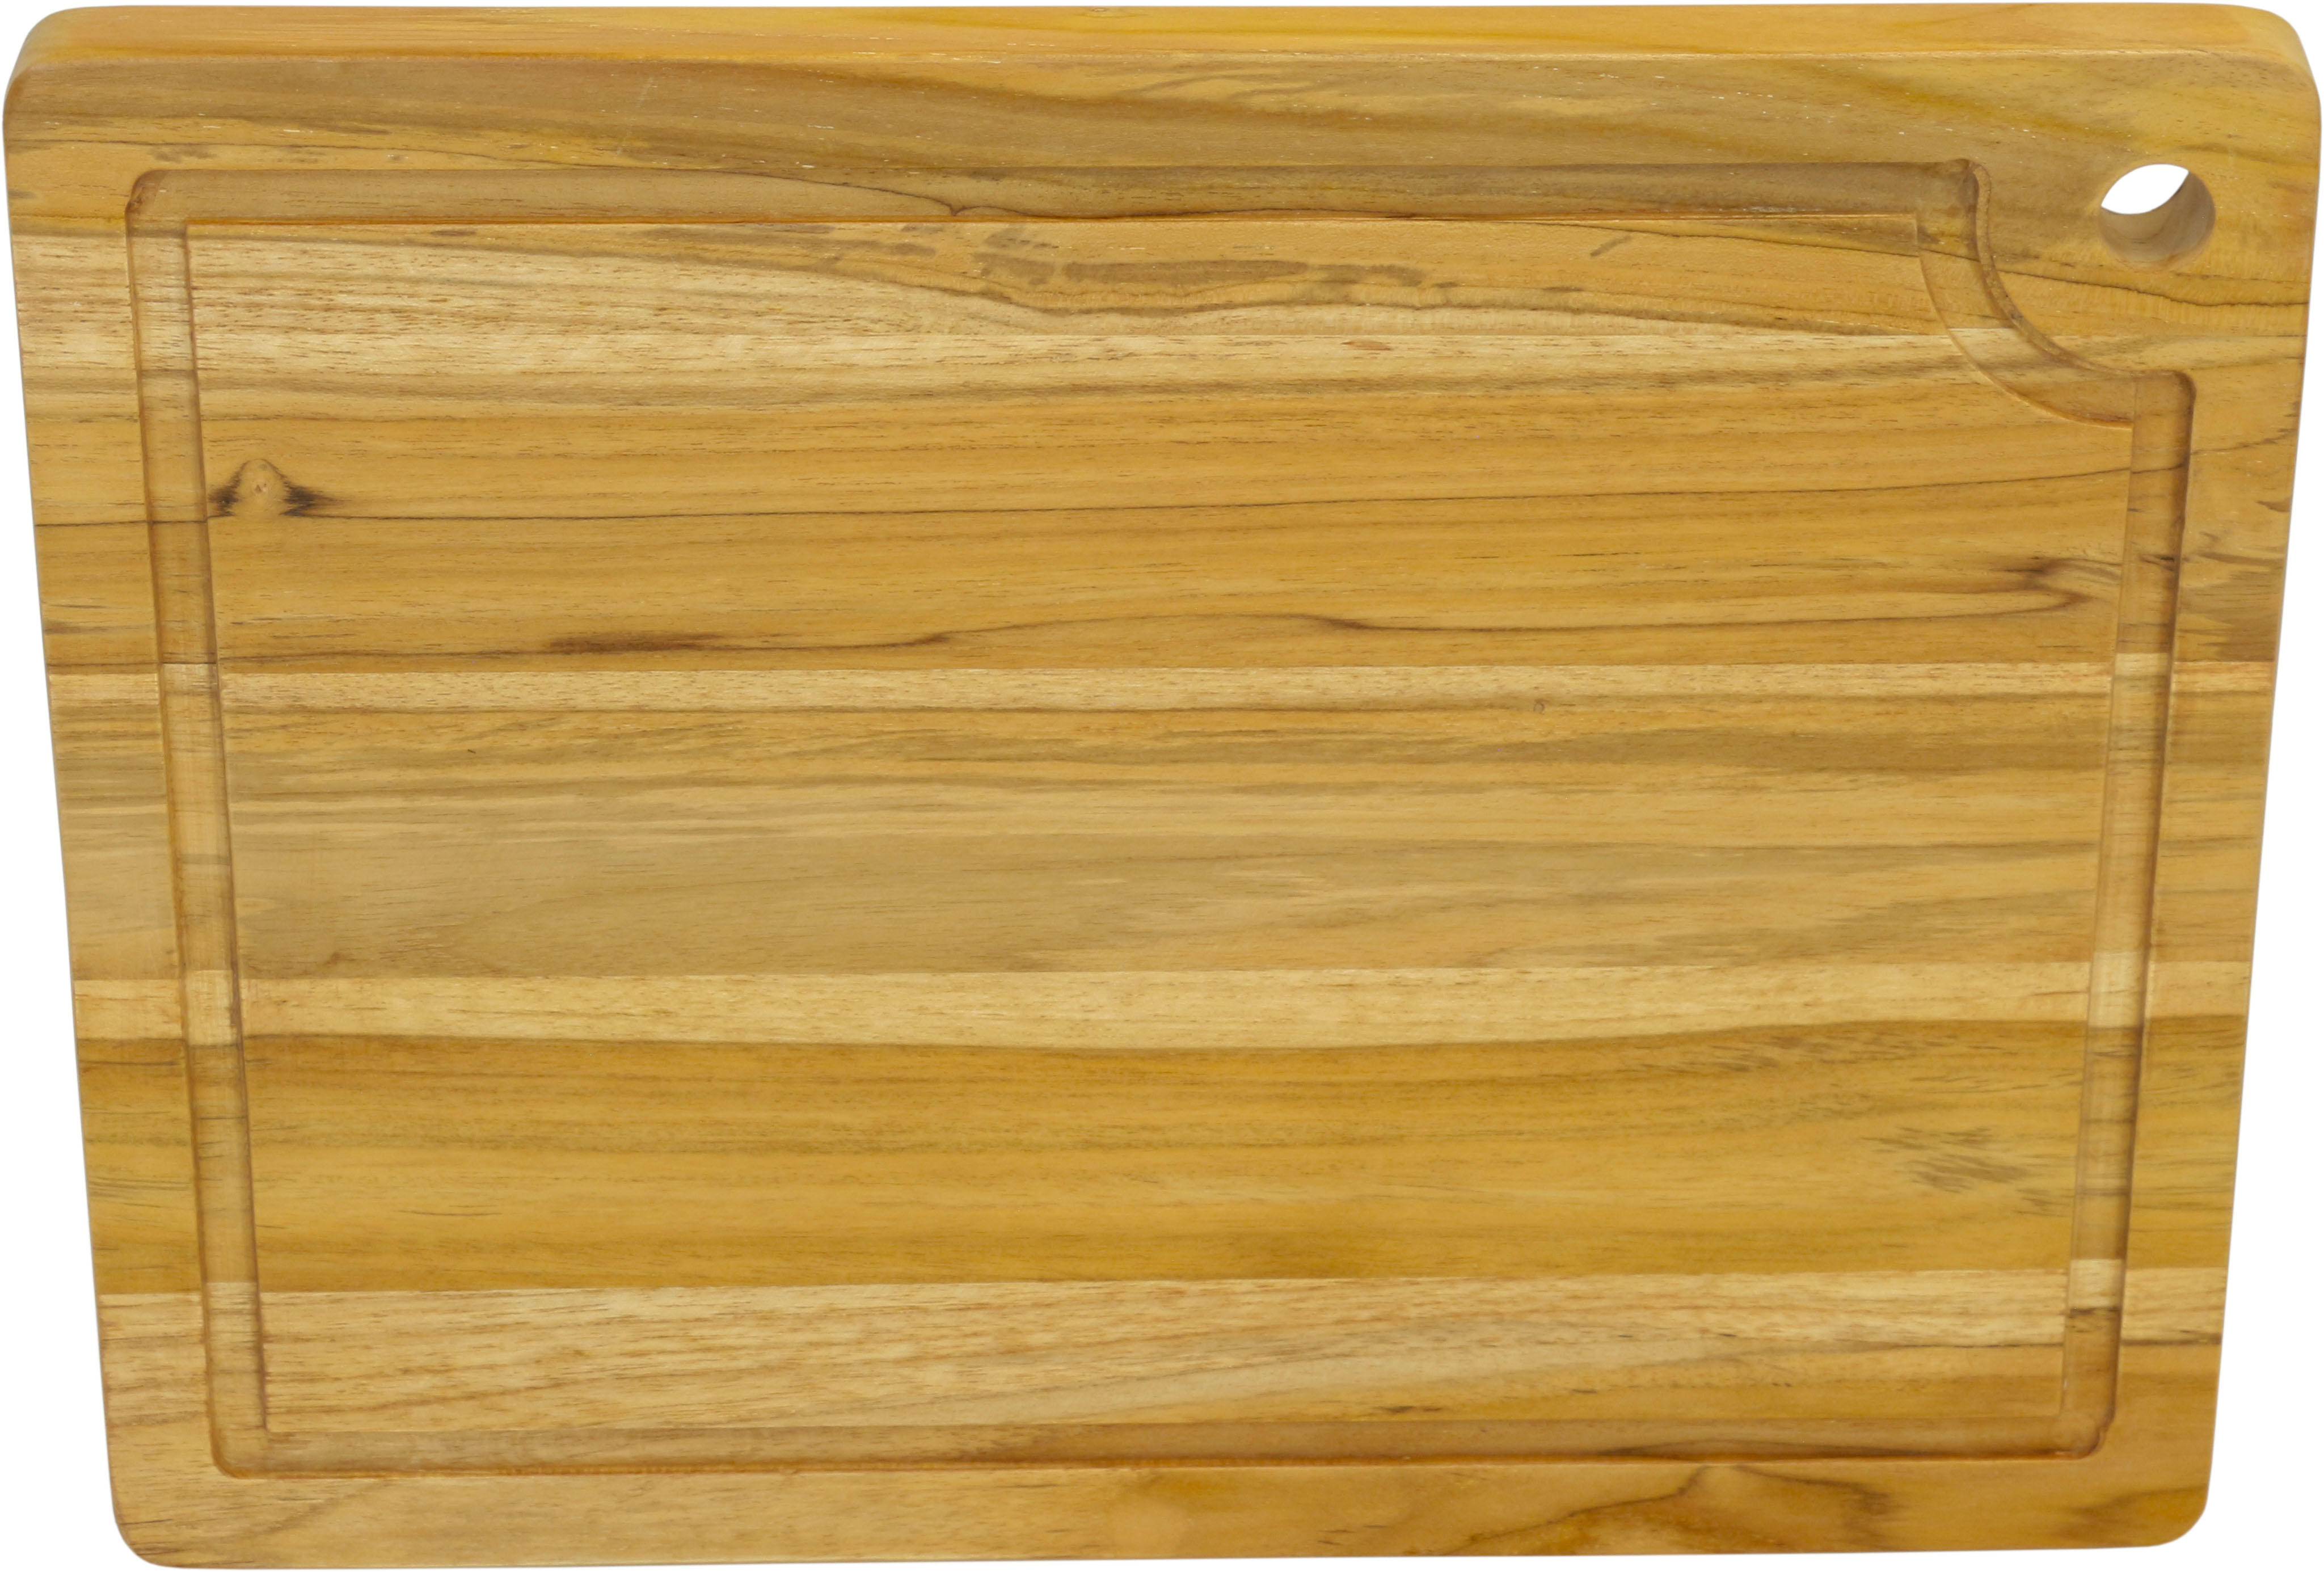 Aqua Teak Manada Teak Wood Cutting Board Brown 12 W x 16 L